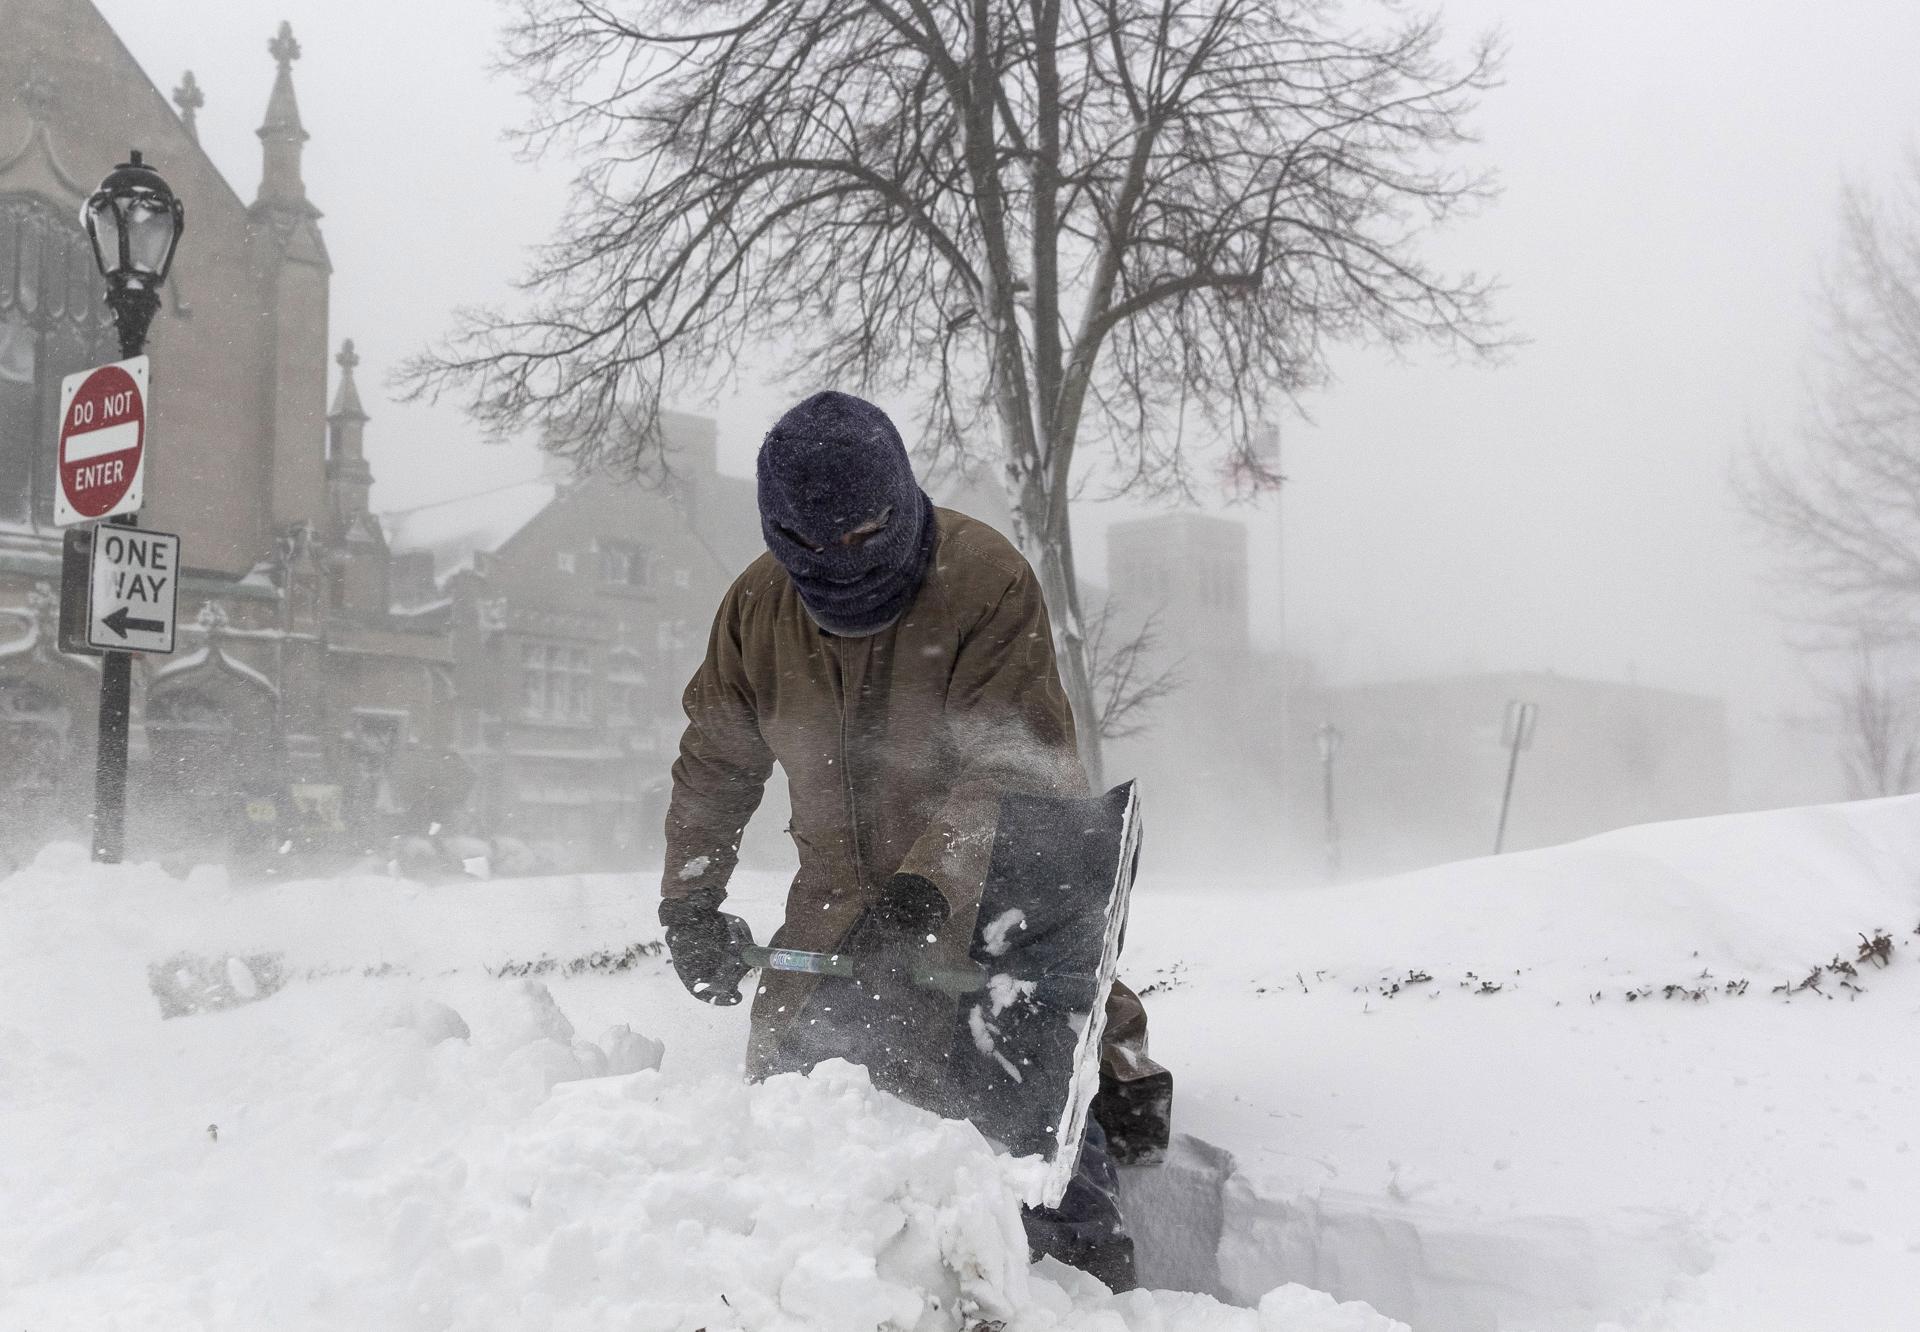 Buffalo (Estados Unidos), 24/12/2022.- Un hombre retira nieve con una pala durante una tormenta invernal que afecta a gran parte de Estados Unidos, en Buffalo, Nueva York, EE.UU., 24 de diciembre de 2022. EFE/JALEN WRIGHT.